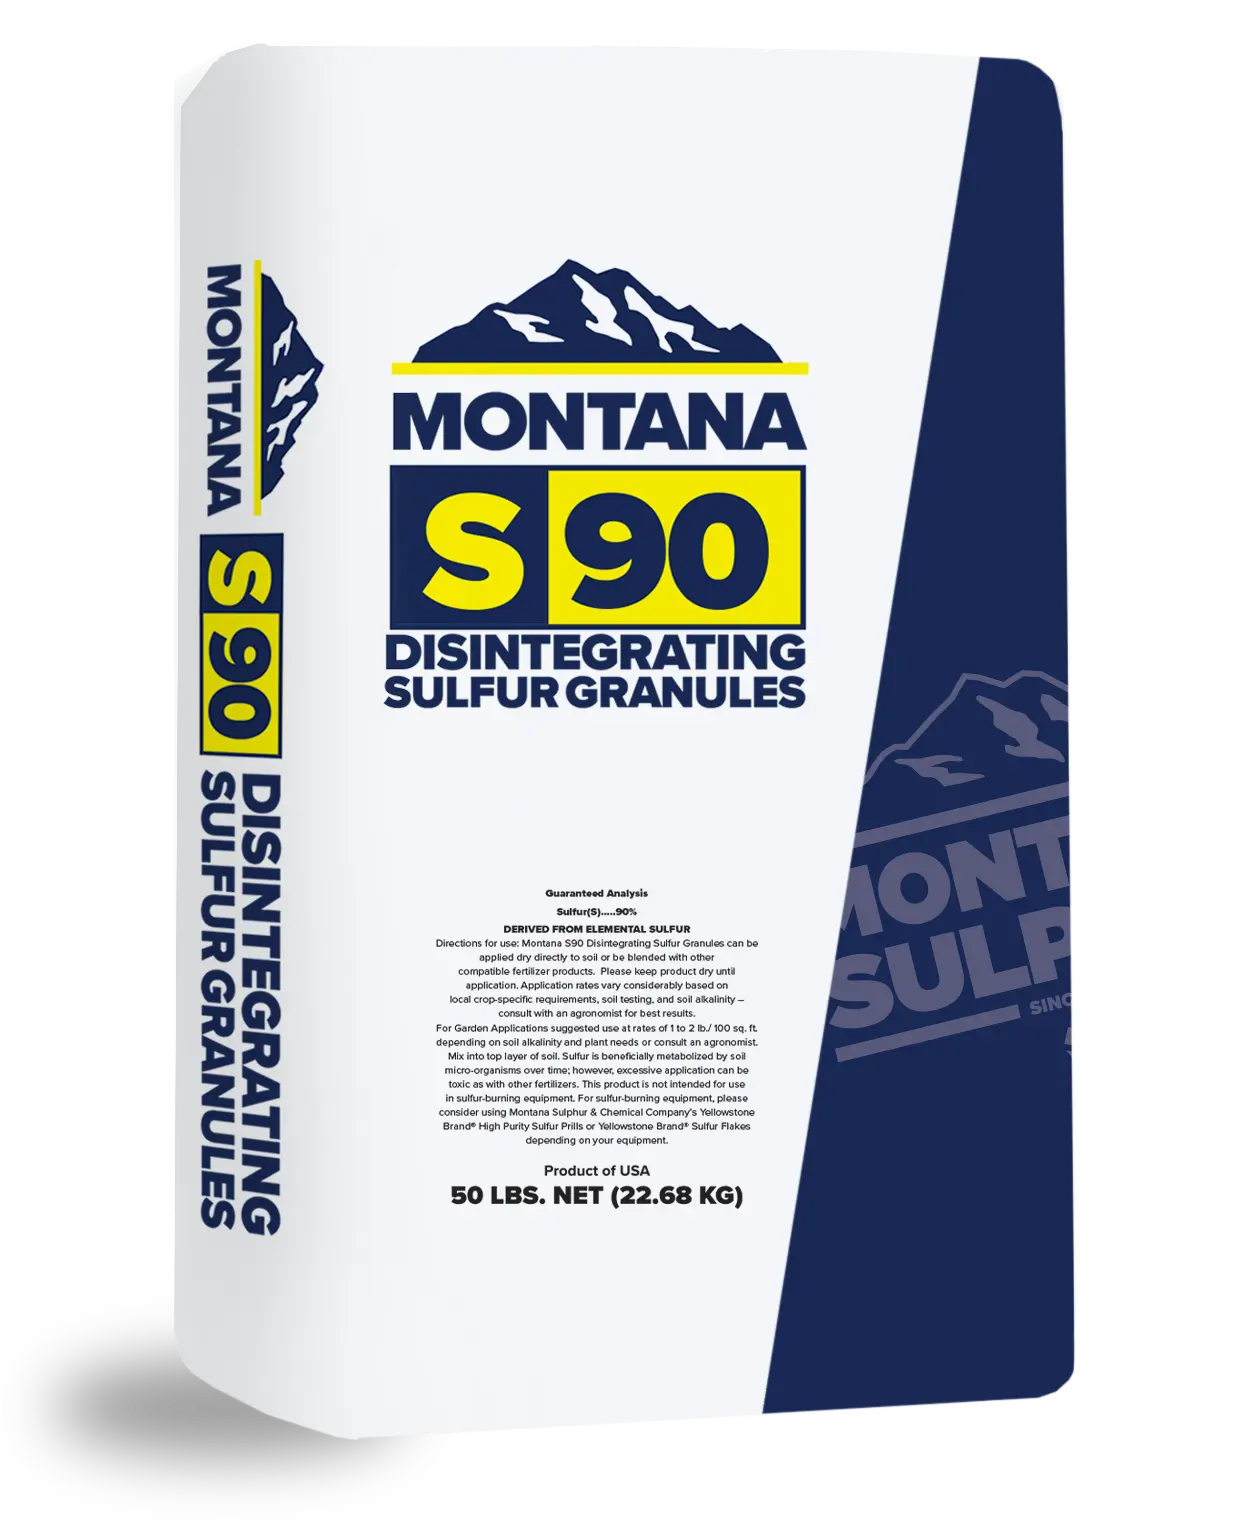 Montana Sulphur S90